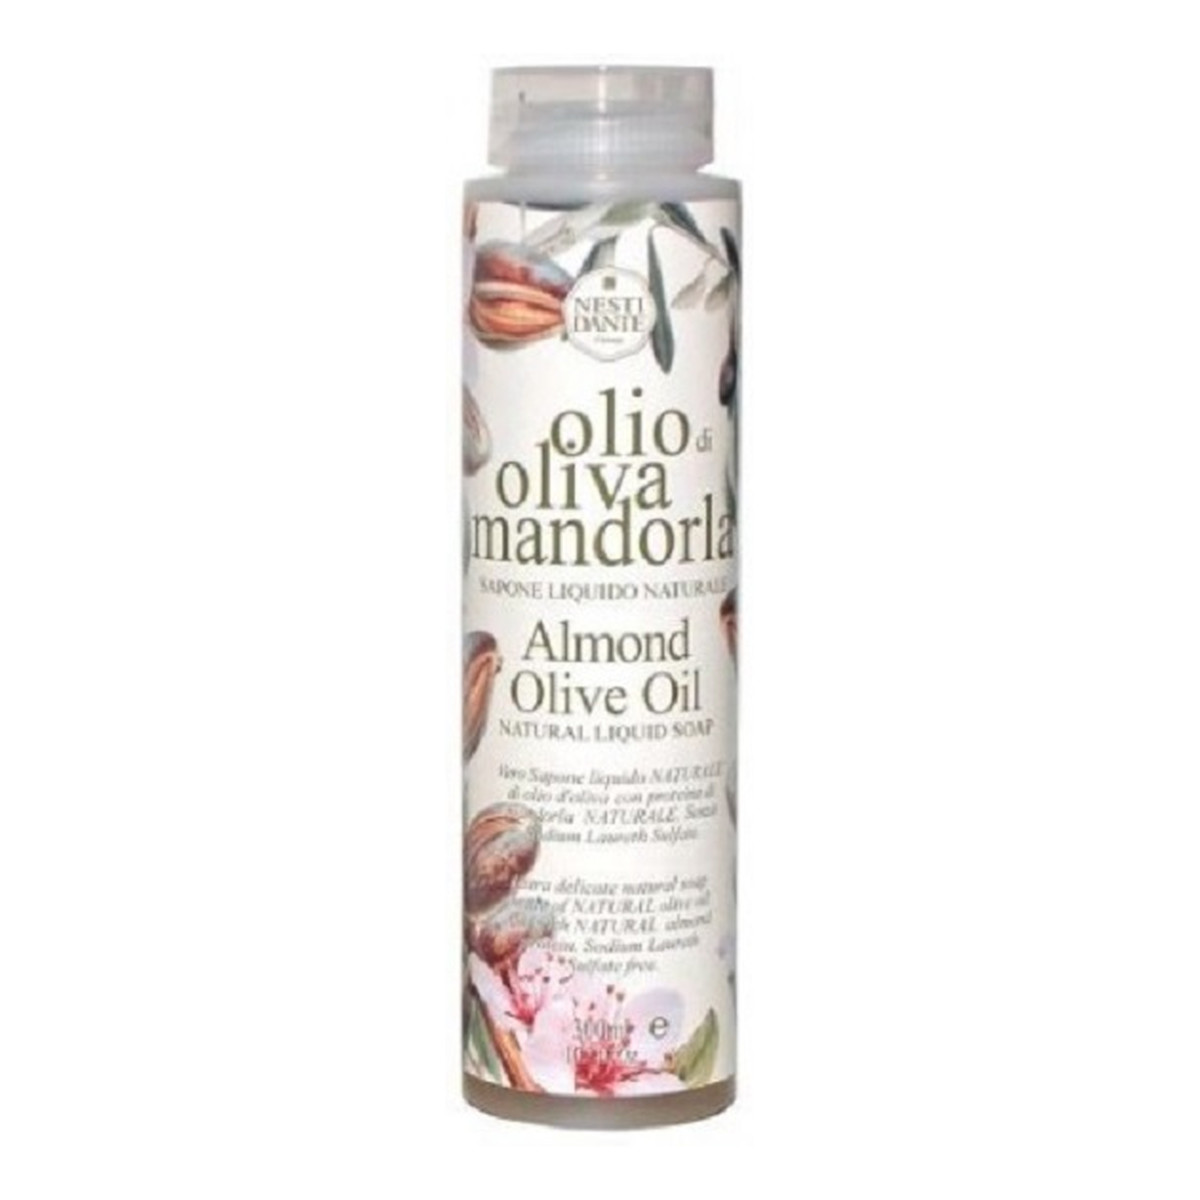 Nesti Dante Olio Di Oliva Mandorla Almond Olive Oil Bath & Shower Natural Liquid Soap Żel pod prysznic 300ml